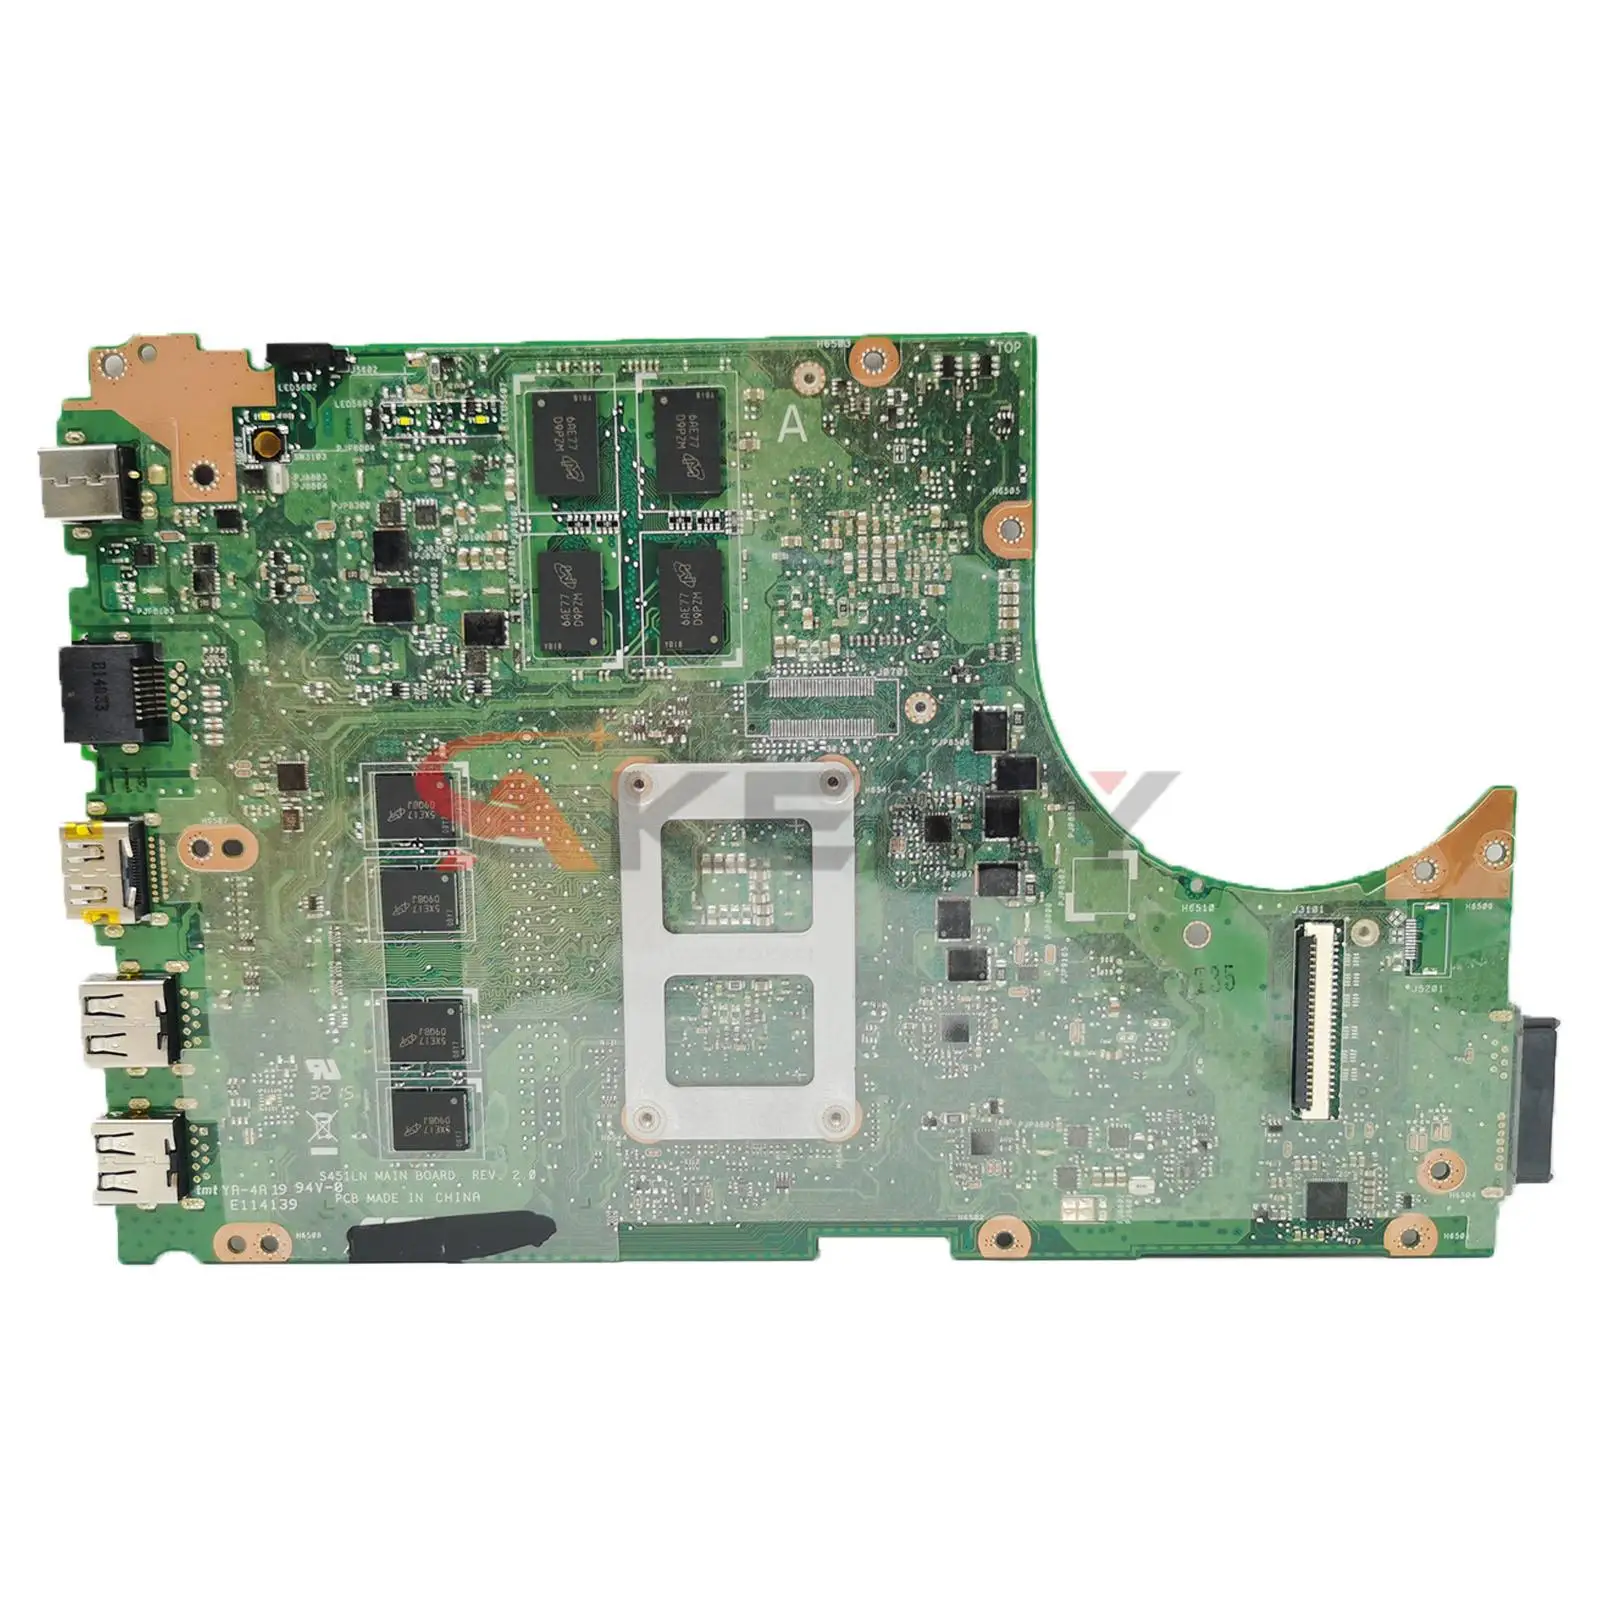 V451L Matična ploča za ASUS S451L S451LN S451LB S451LA S451 R451L K451L Matična ploča laptop sa i3 i5 i7 UMA/PM 4 GB/memorija